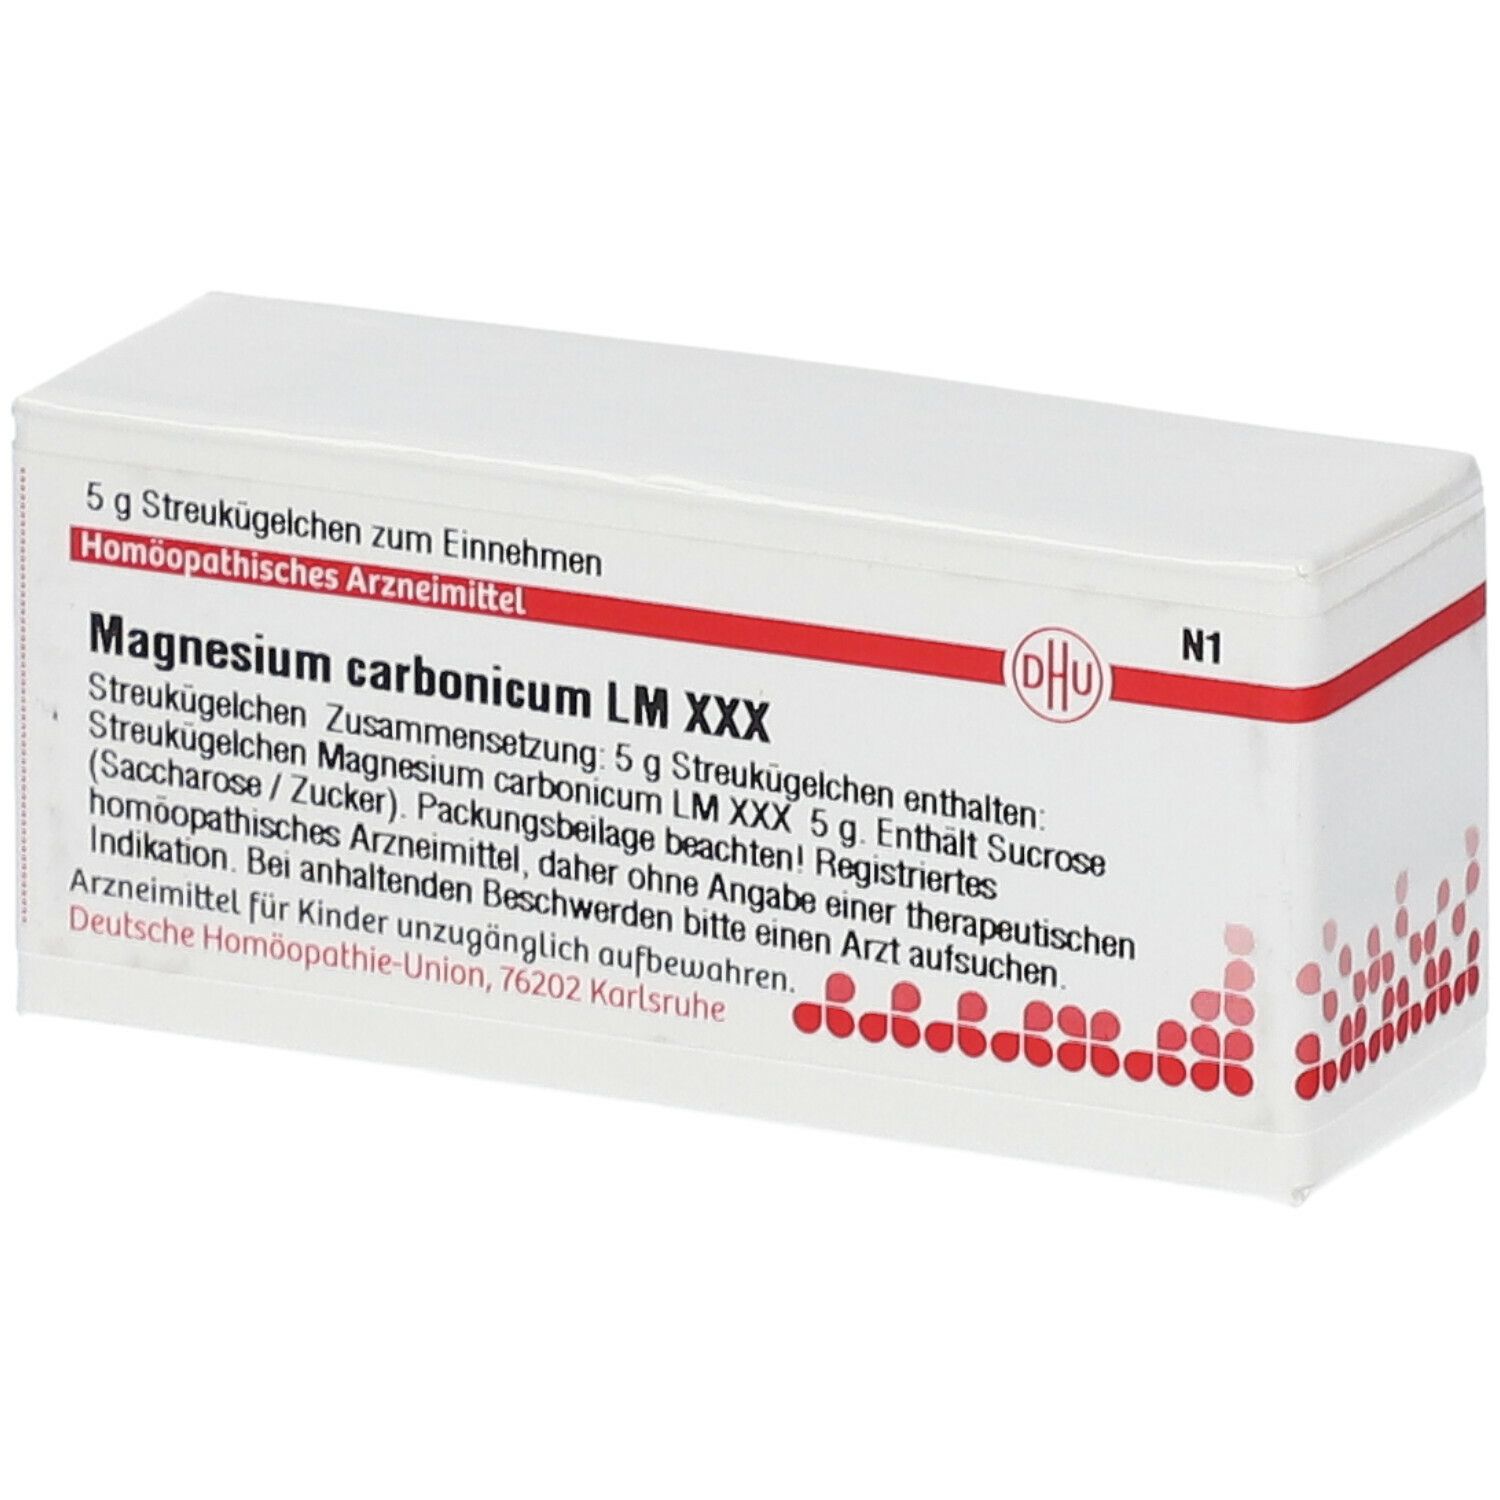 DHU Magnesium Carbonicum LM XXX